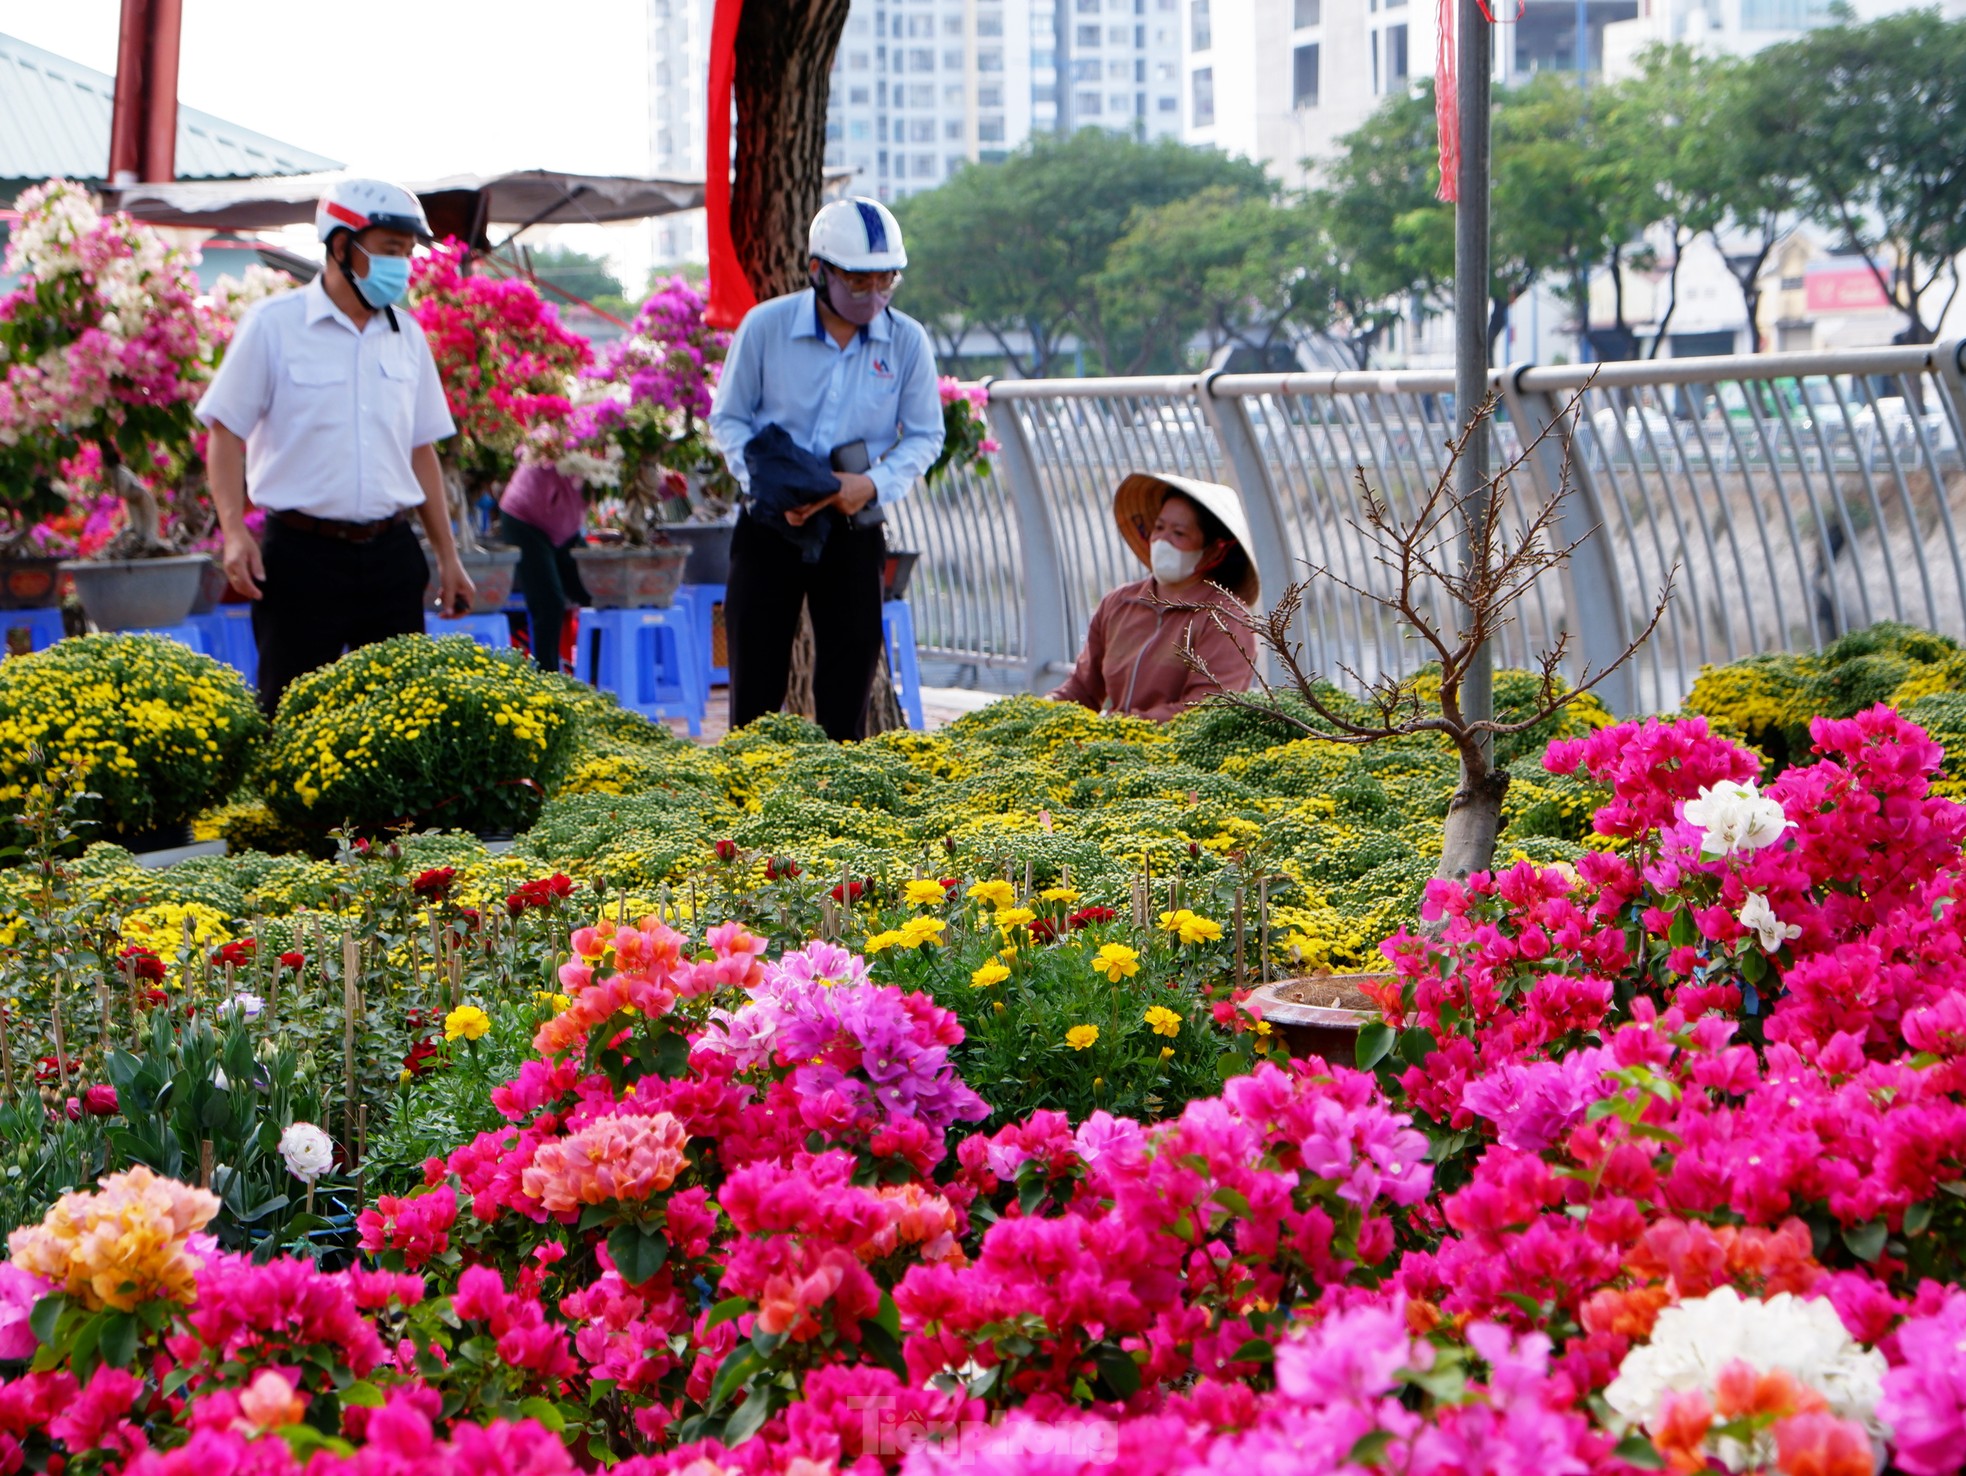 Thuyền hoa, cây cảnh cập bến Bình Đông phục vụ người dân TPHCM chơi Tết - Ảnh 4.